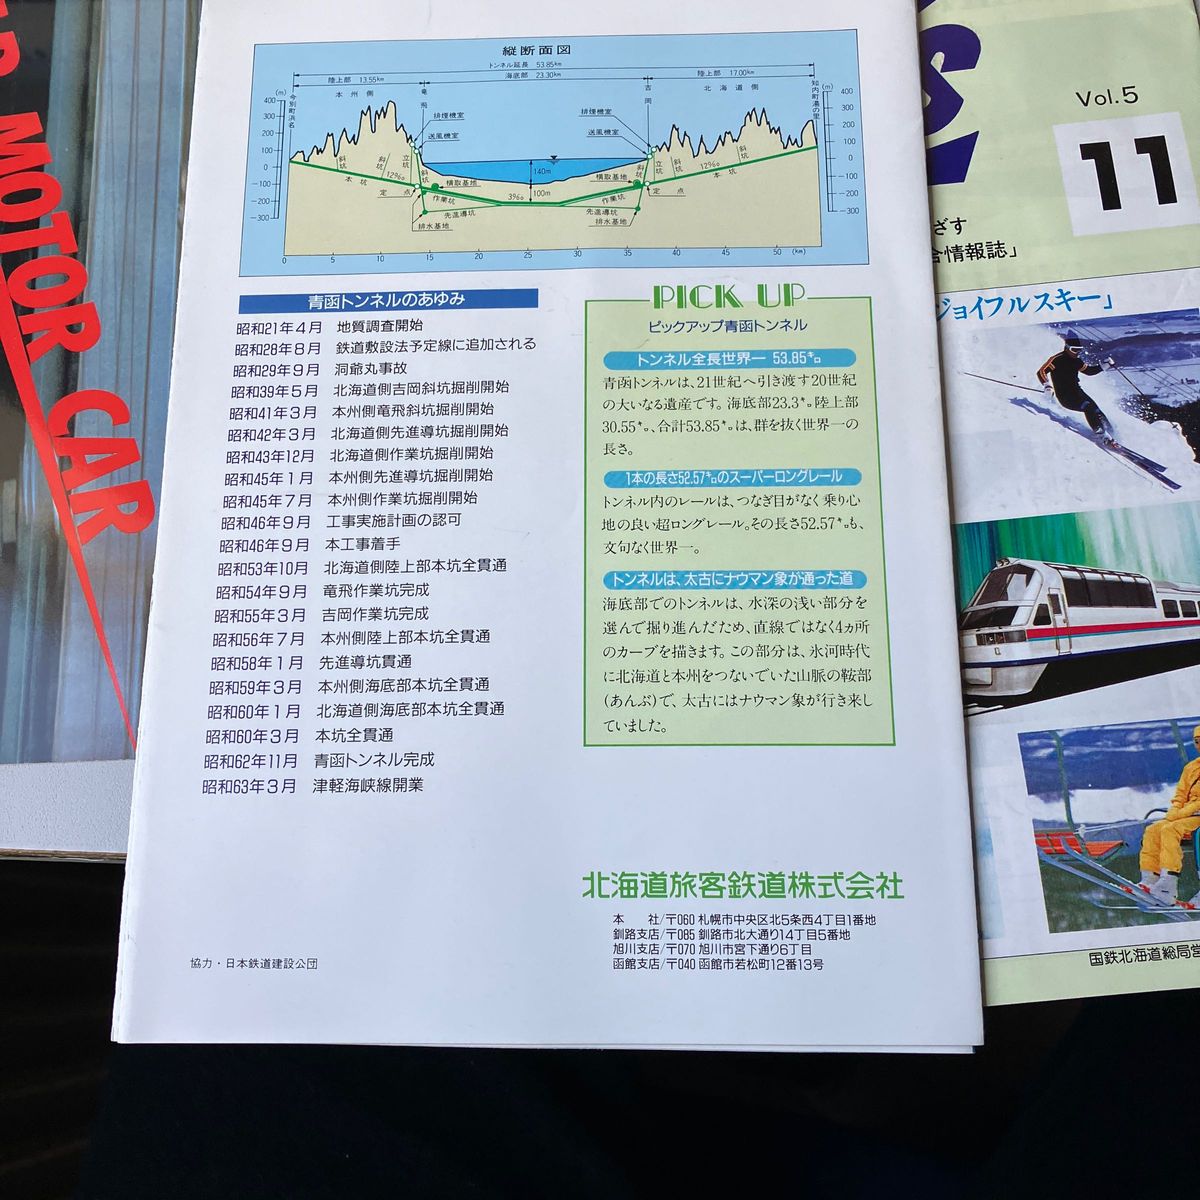 鉄道コレクションで青函トンネルのリーフレット2部と国鉄が発行していたスキートレインの情報誌などグッズです。